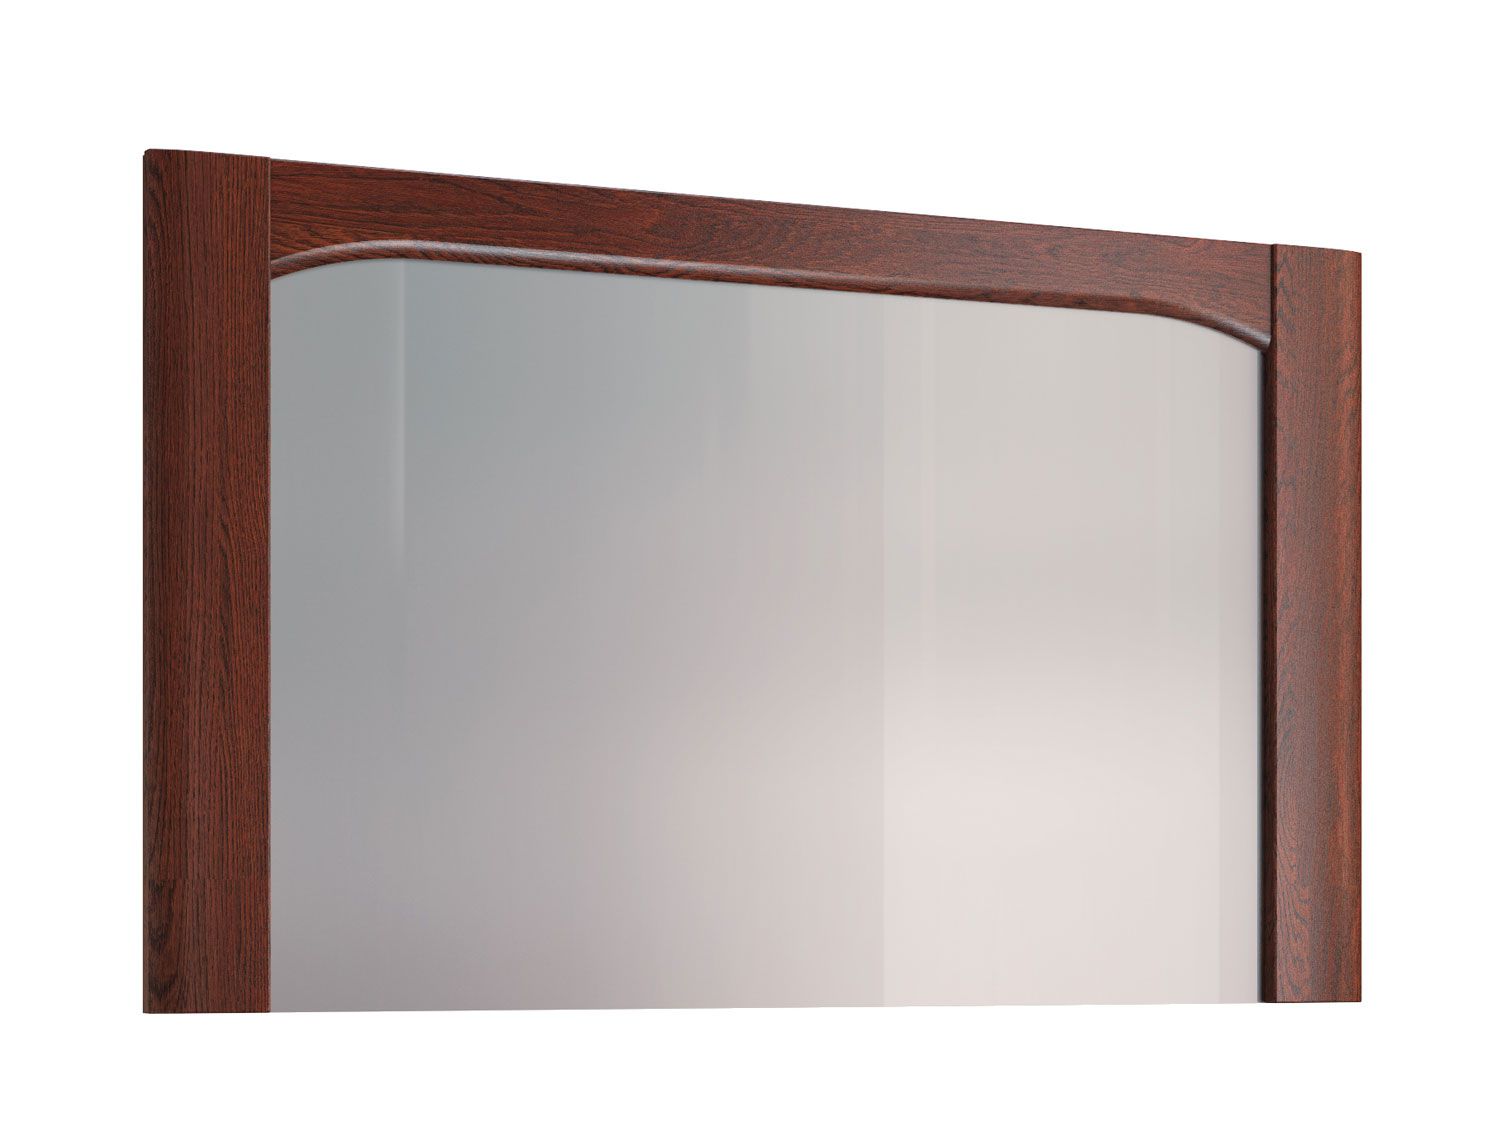 Specchio semplice con cornice in legno Krasno 35, rovere massiccio, dimensioni: 70 x 115 x 4 cm, perfetto per la toeletta